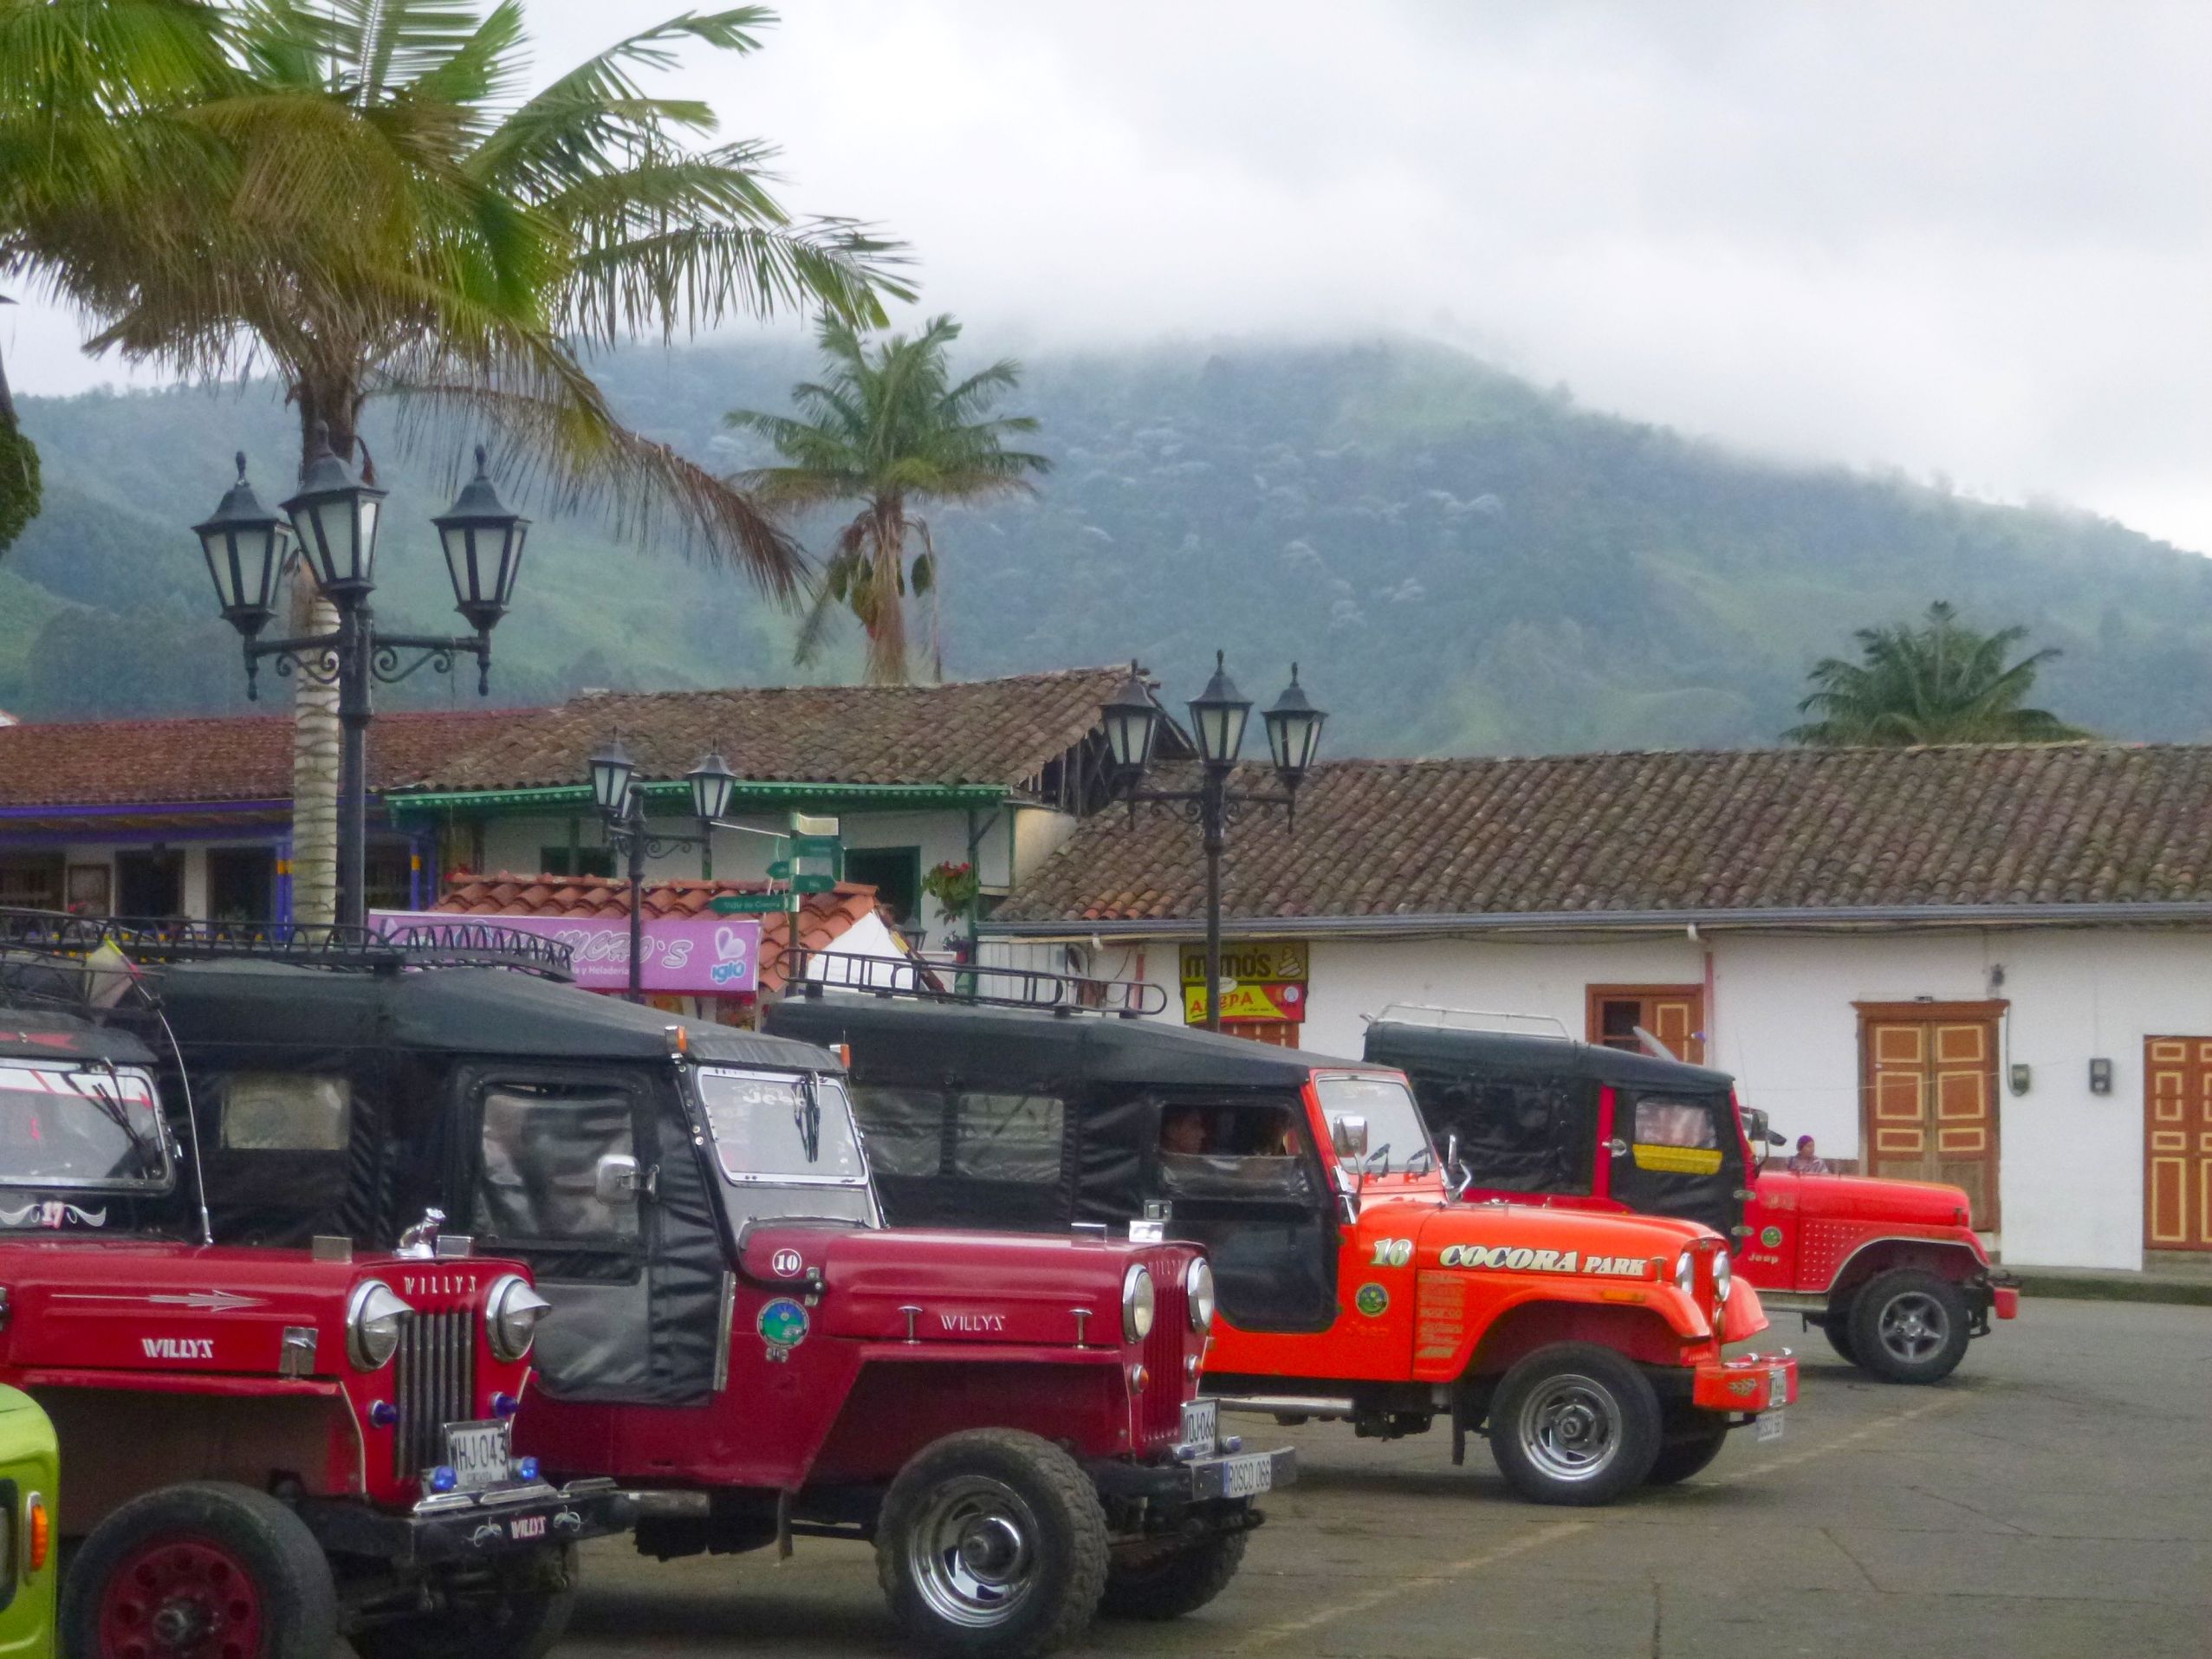 Jeep Willys pour monter à la Vallée de Cocora.